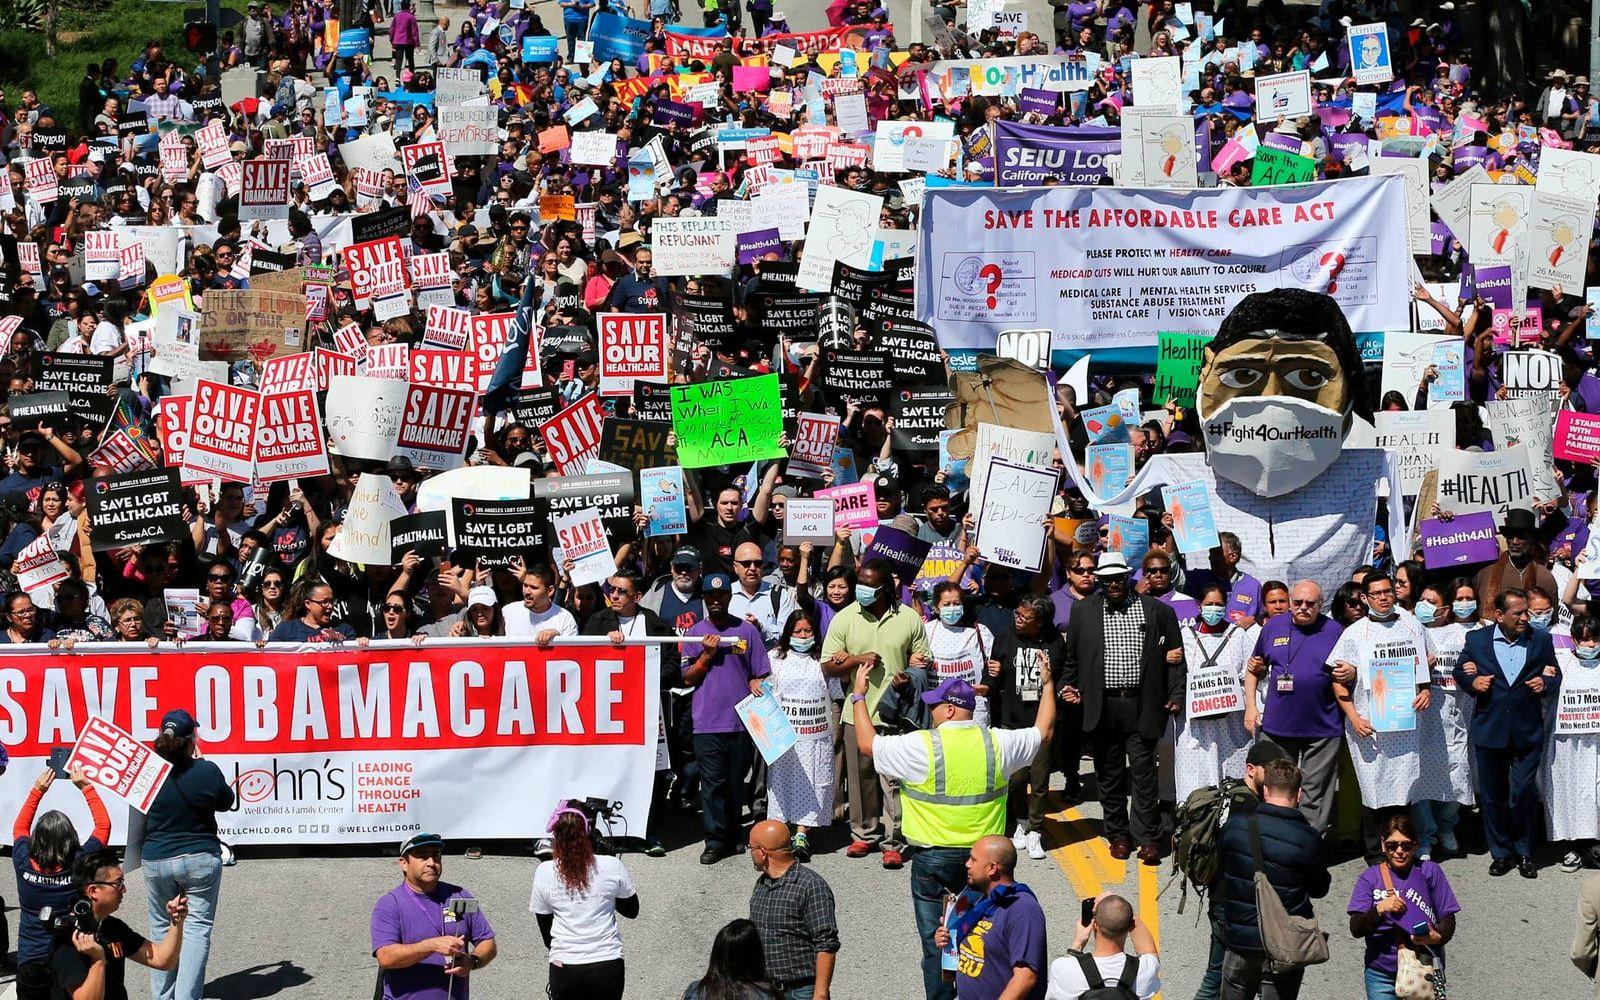 Trumps planer på att rusta ner Obamacare har mött stora protester och inga demokrater väntas rösta på Trumps egen sjukvårdsreform AHCA. Bild: TT